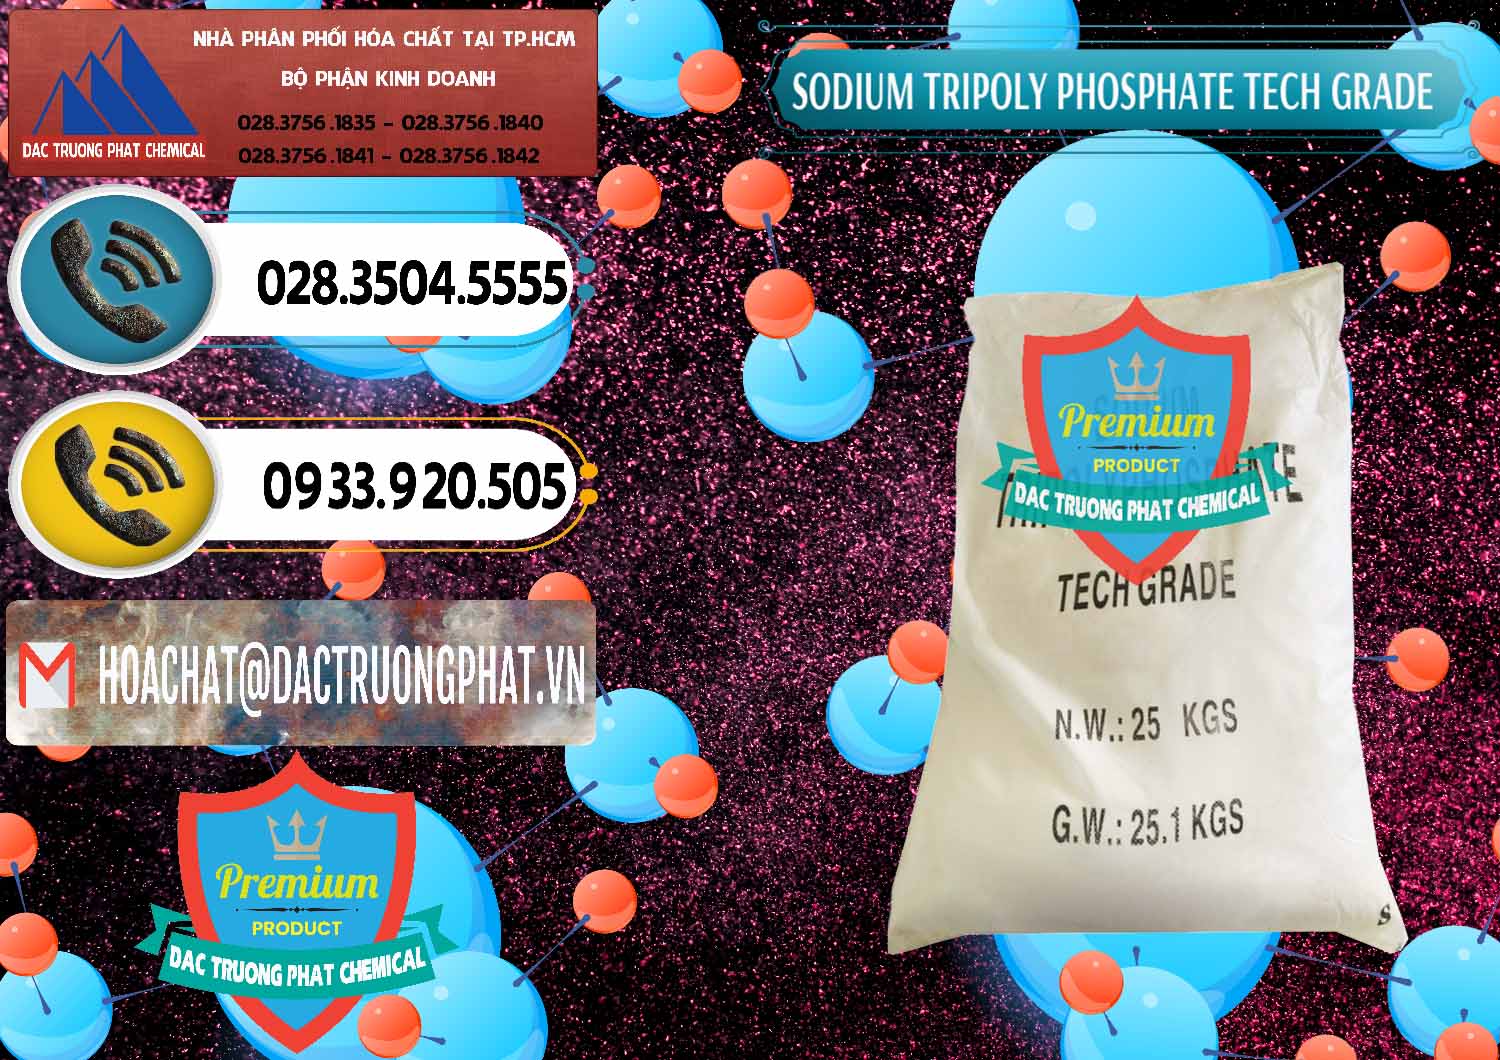 Kinh doanh - bán Sodium Tripoly Phosphate - STPP Tech Grade Trung Quốc China - 0453 - Chuyên cung cấp & bán hóa chất tại TP.HCM - hoachatdetnhuom.vn